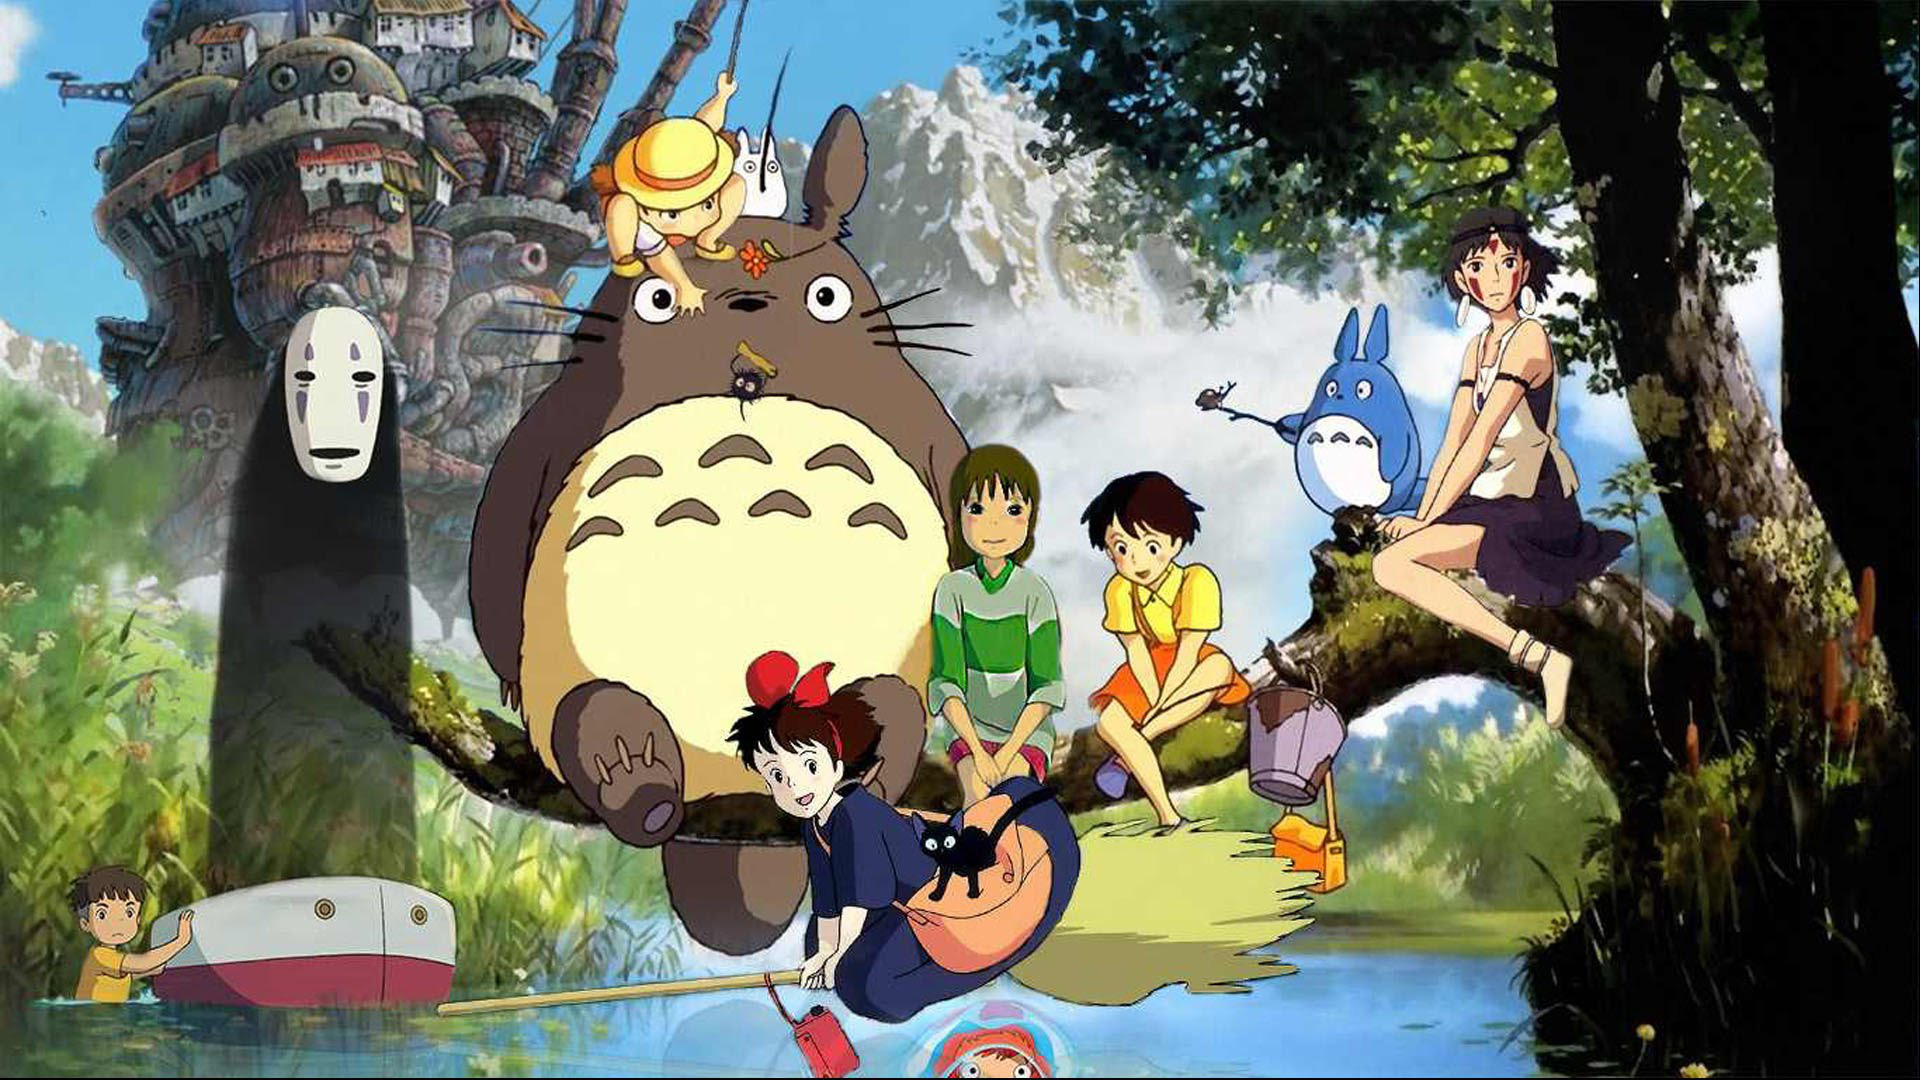 21 Kiệt Tác Anime Của Studio Ghibli Đổ Bộ Netflix, Có Cả Vô Diện Và Hàng  Xóm Totoro Siêu Cưng